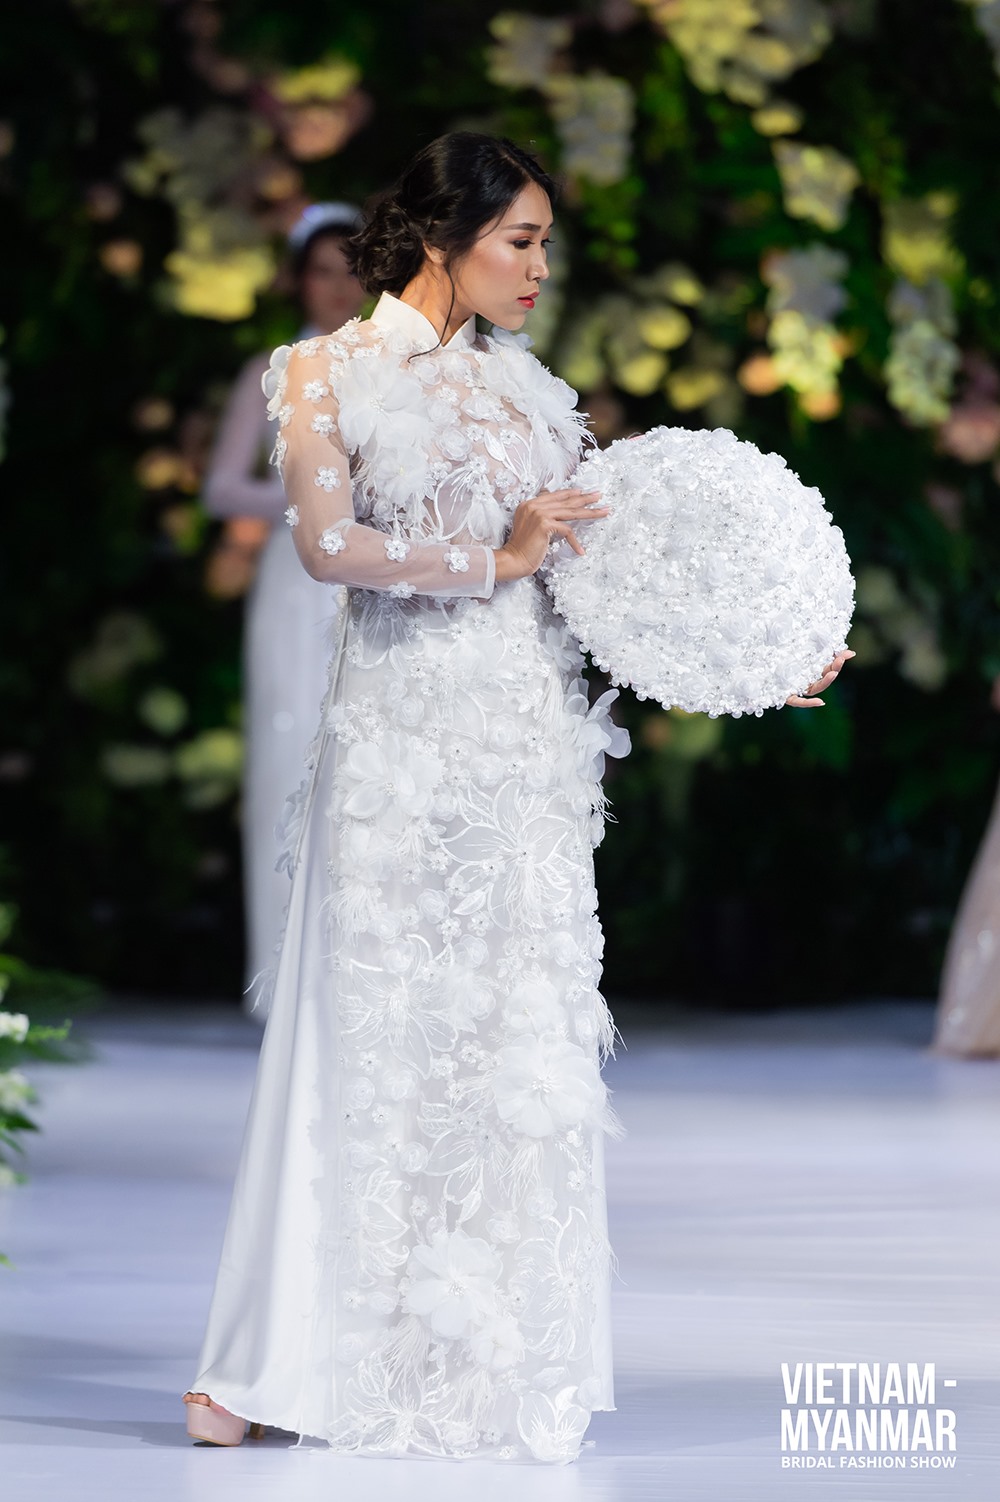 Áo dài truyền thống Việt Nam gây ấn tượng với quan khách quốc tế trong “Vietnam - Myanmar Bridal Fashion Show”